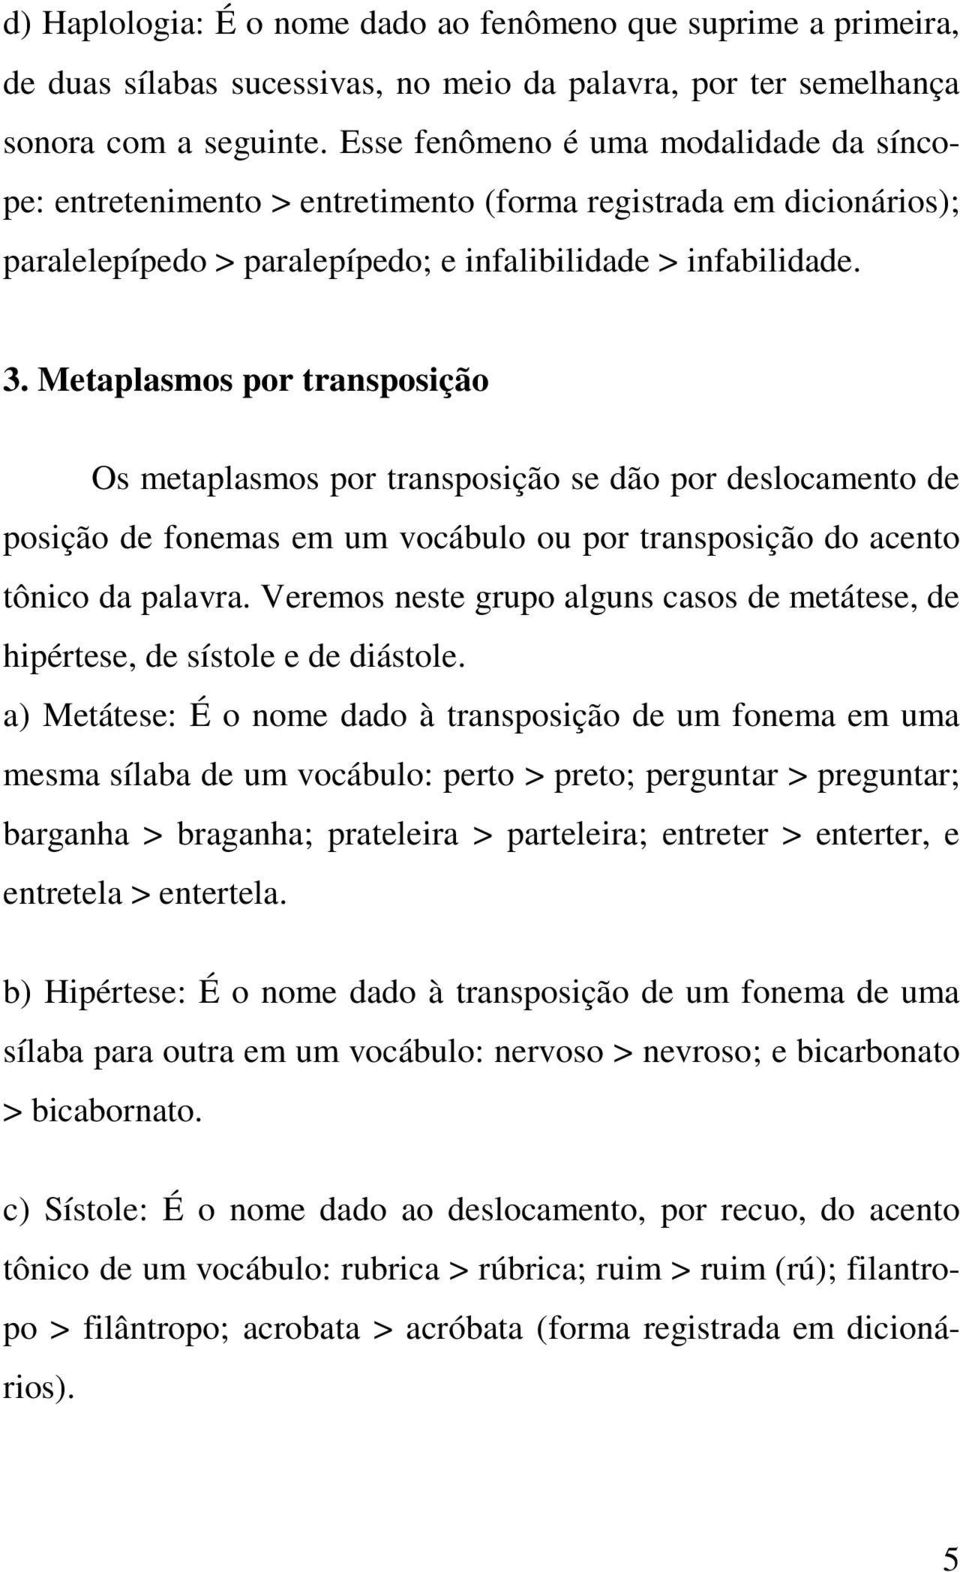 Metaplasmos por transposição Os metaplasmos por transposição se dão por deslocamento de posição de fonemas em um vocábulo ou por transposição do acento tônico da palavra.